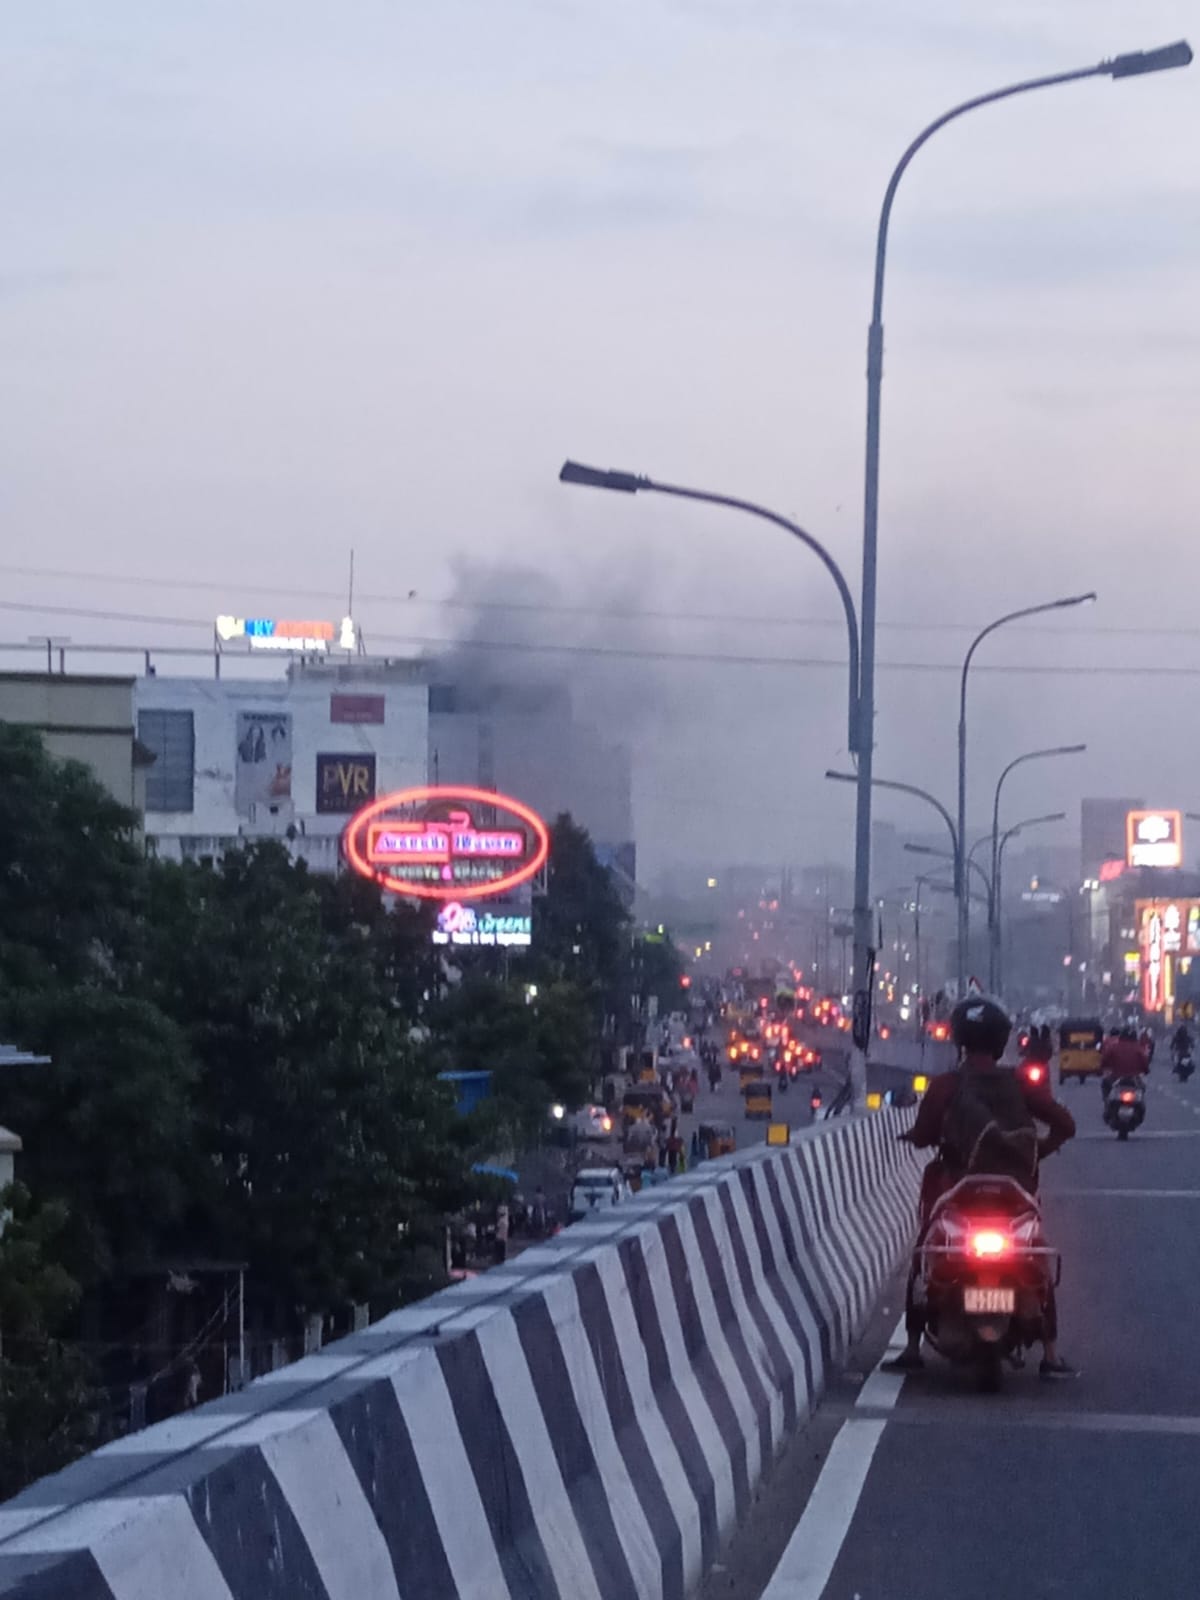 Fire Accident: 9 மாடி கட்டிடத்தில் பயங்கர தீ விபத்து - சம்பவ இடத்திற்கு விரைந்த தீயணைப்பு துறையினர்